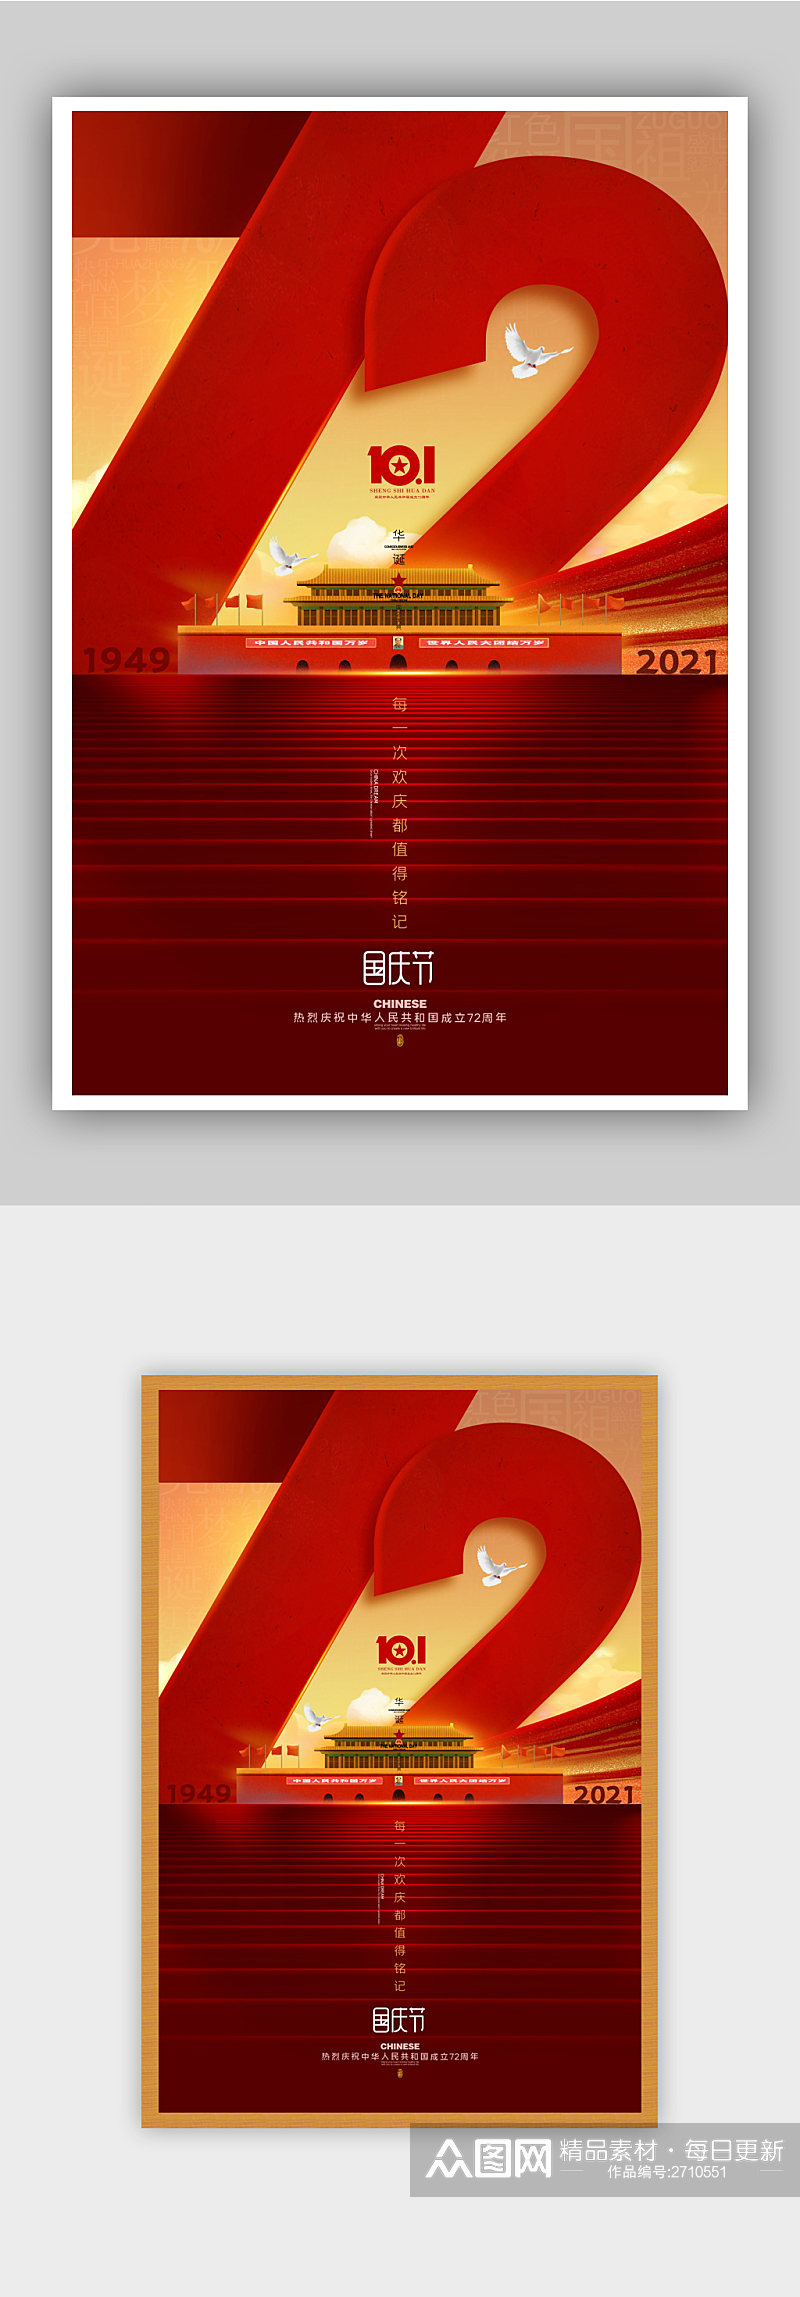 红色简约国庆72周年纪念海报素材